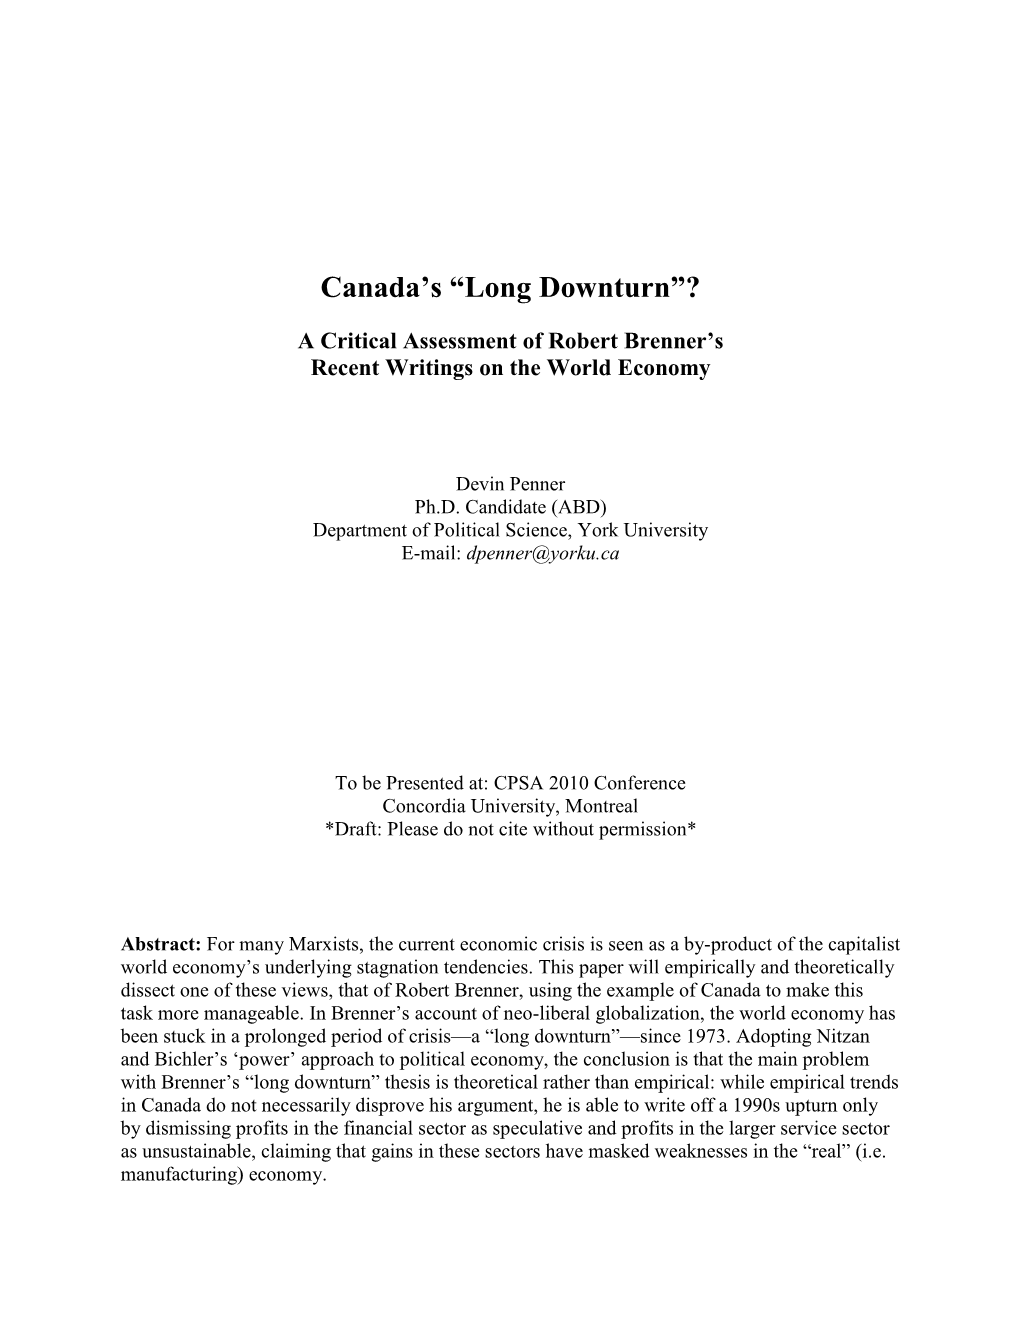 Canada's “Long Downturn”? a Critical Assessment of Robert Brenner's